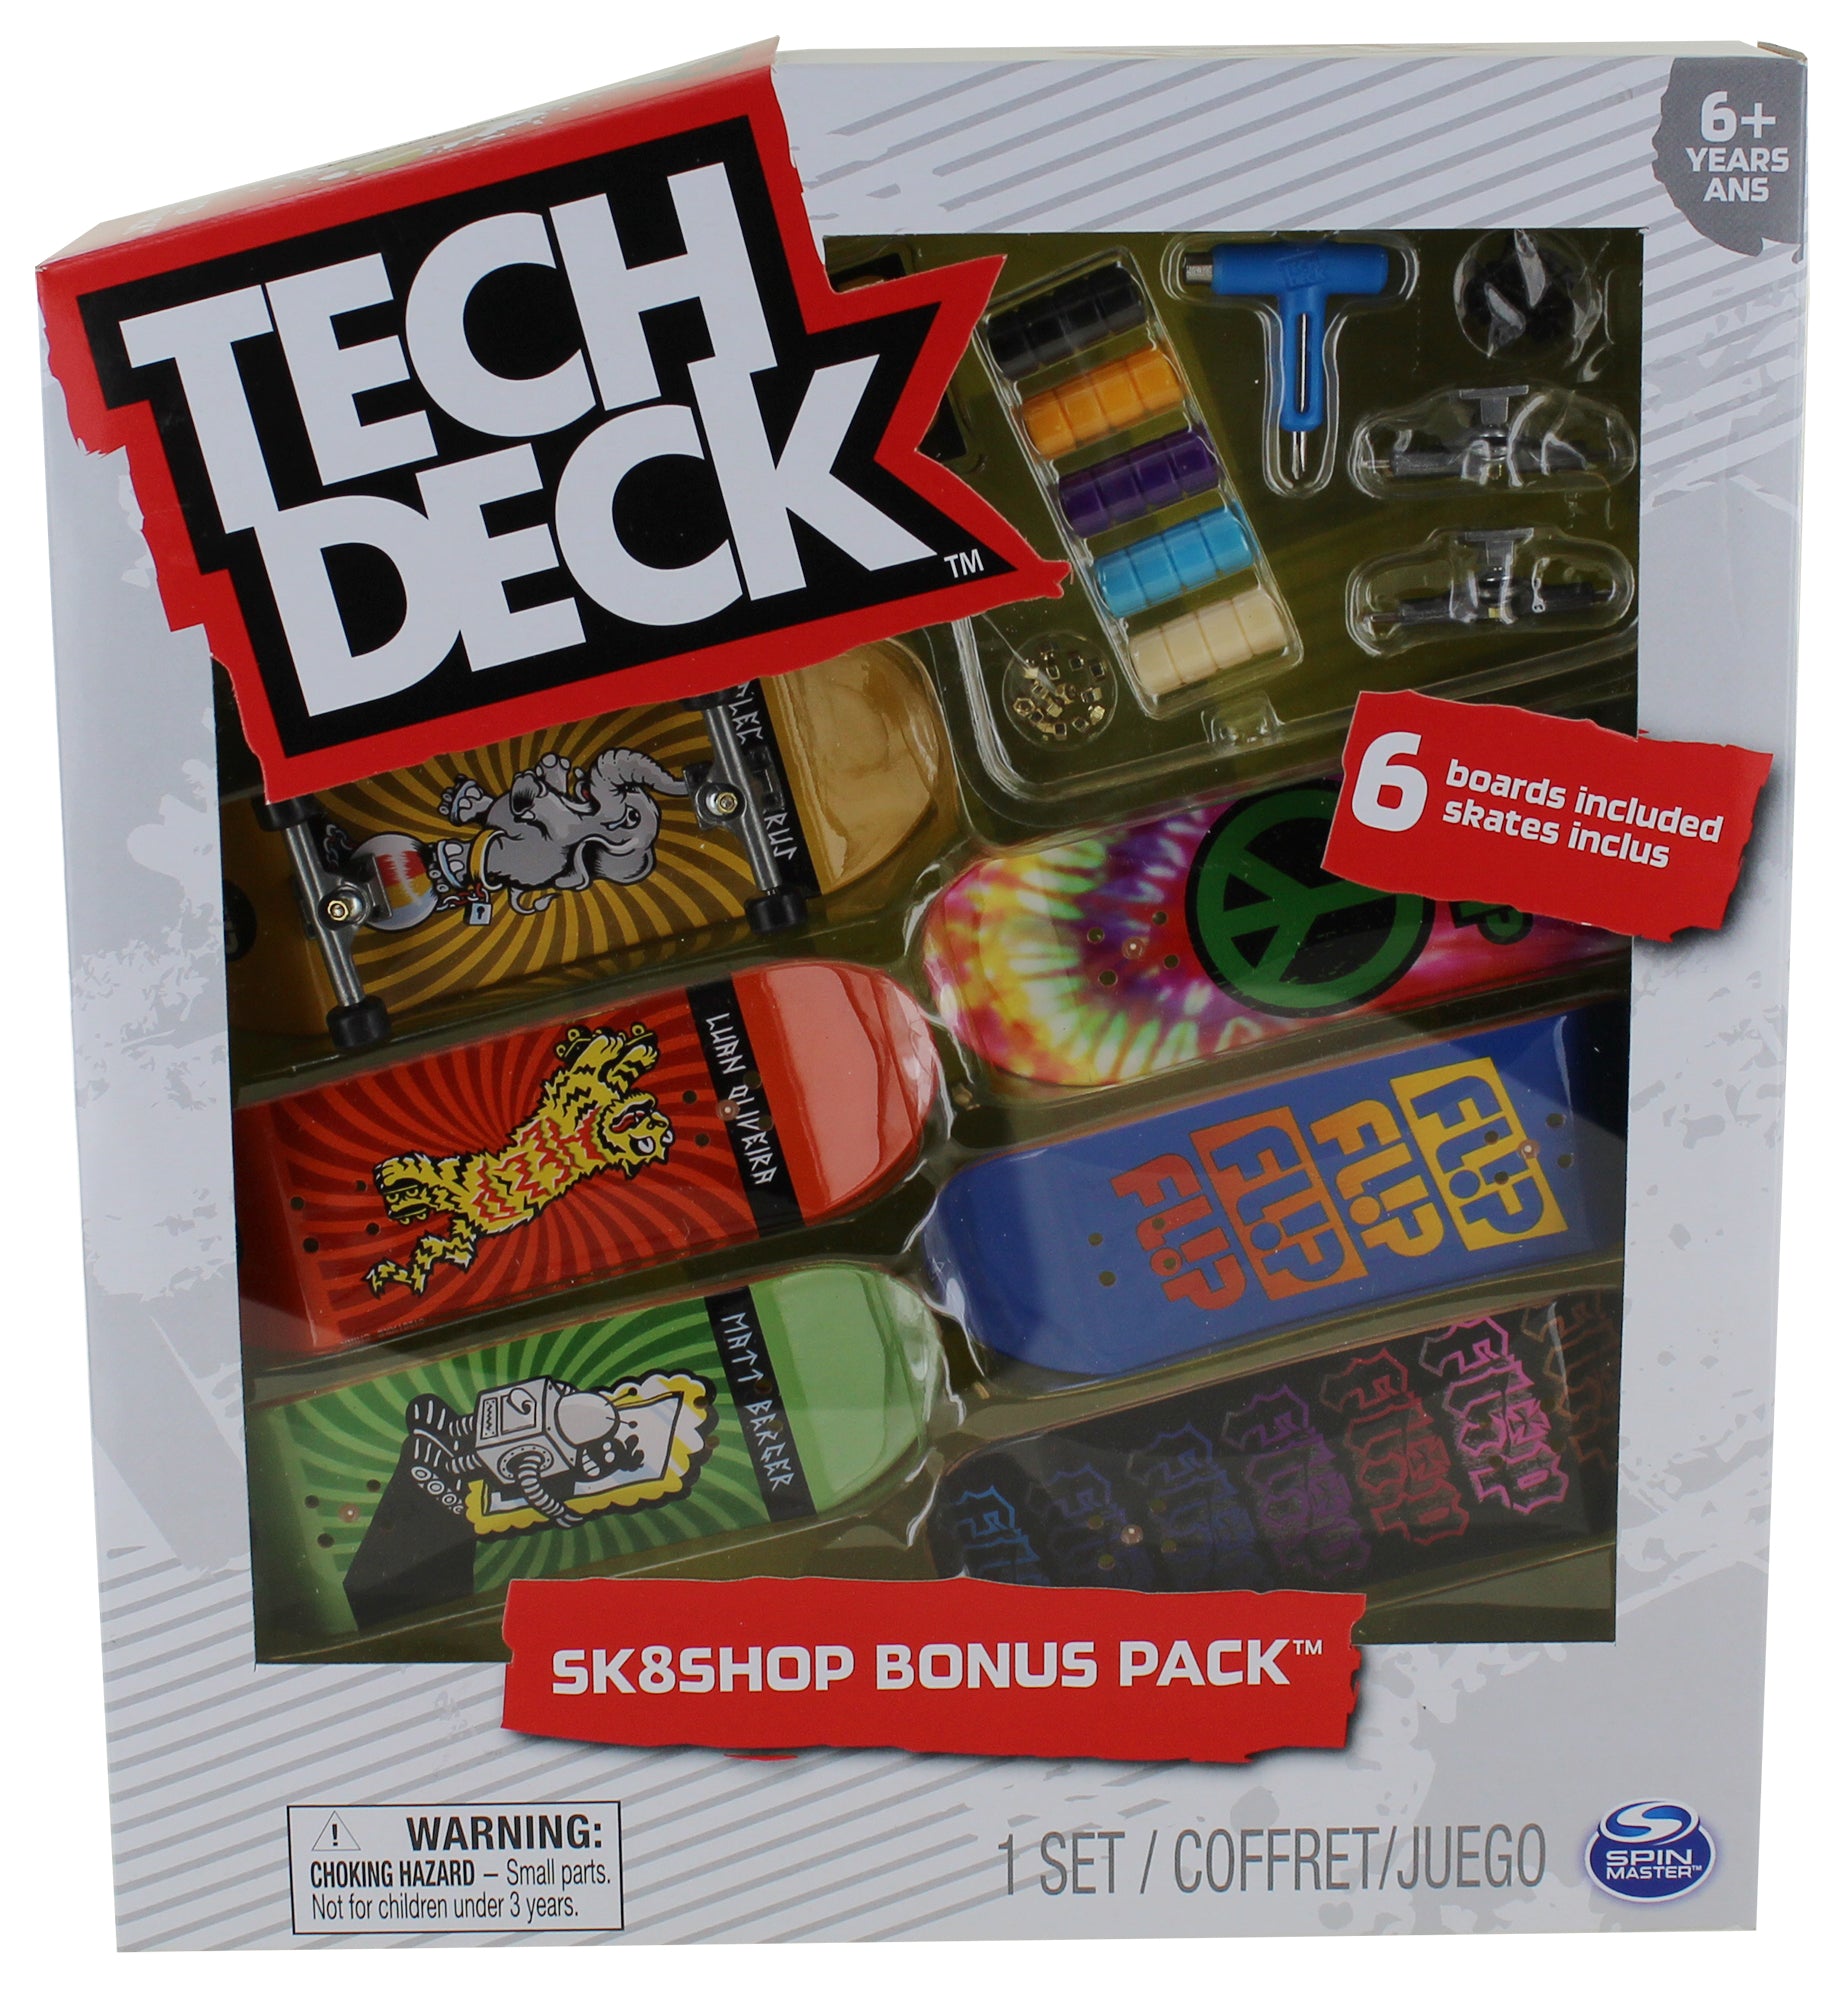 Tech Deck Sk8Shop Bonus Pack